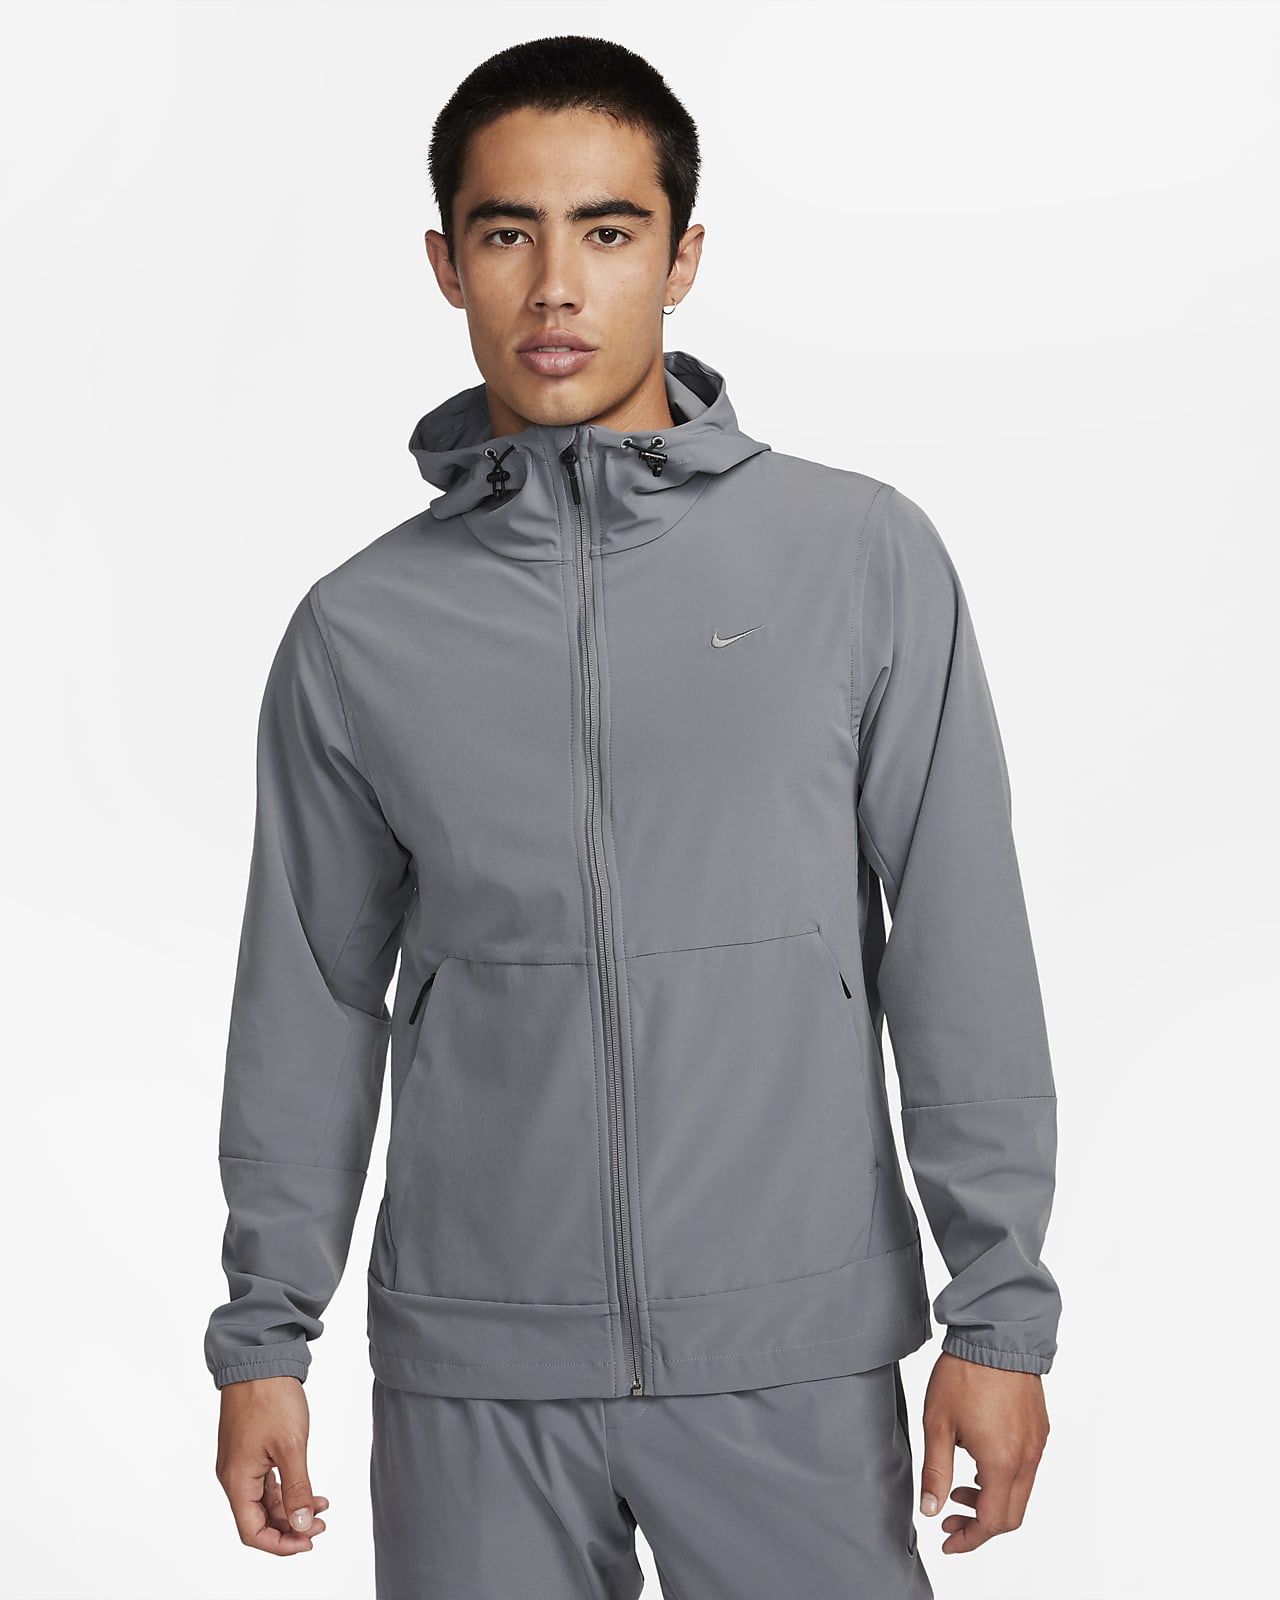 เสื้อแจ็คเก็ตอเนกประสงค์เคลือบกันน้ำมีฮู้ดผู้ชาย Nike Repel Unlimited